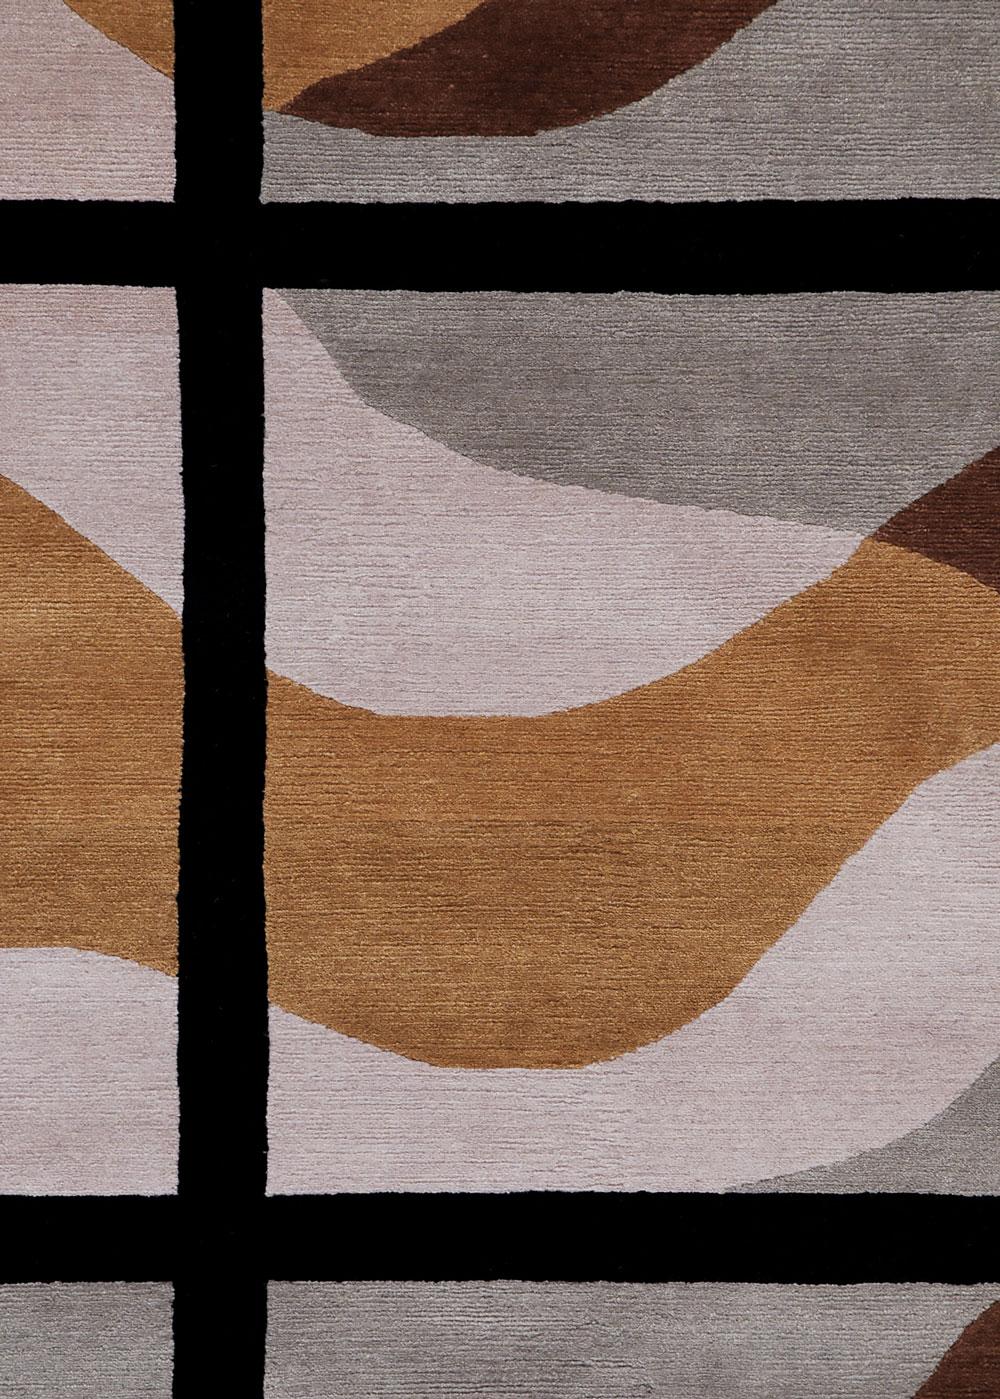 Dune - Alessandro Mendini Modern Design Teppich Teppich Wolle Baumwolle Handgeknüpft

Wild Furs